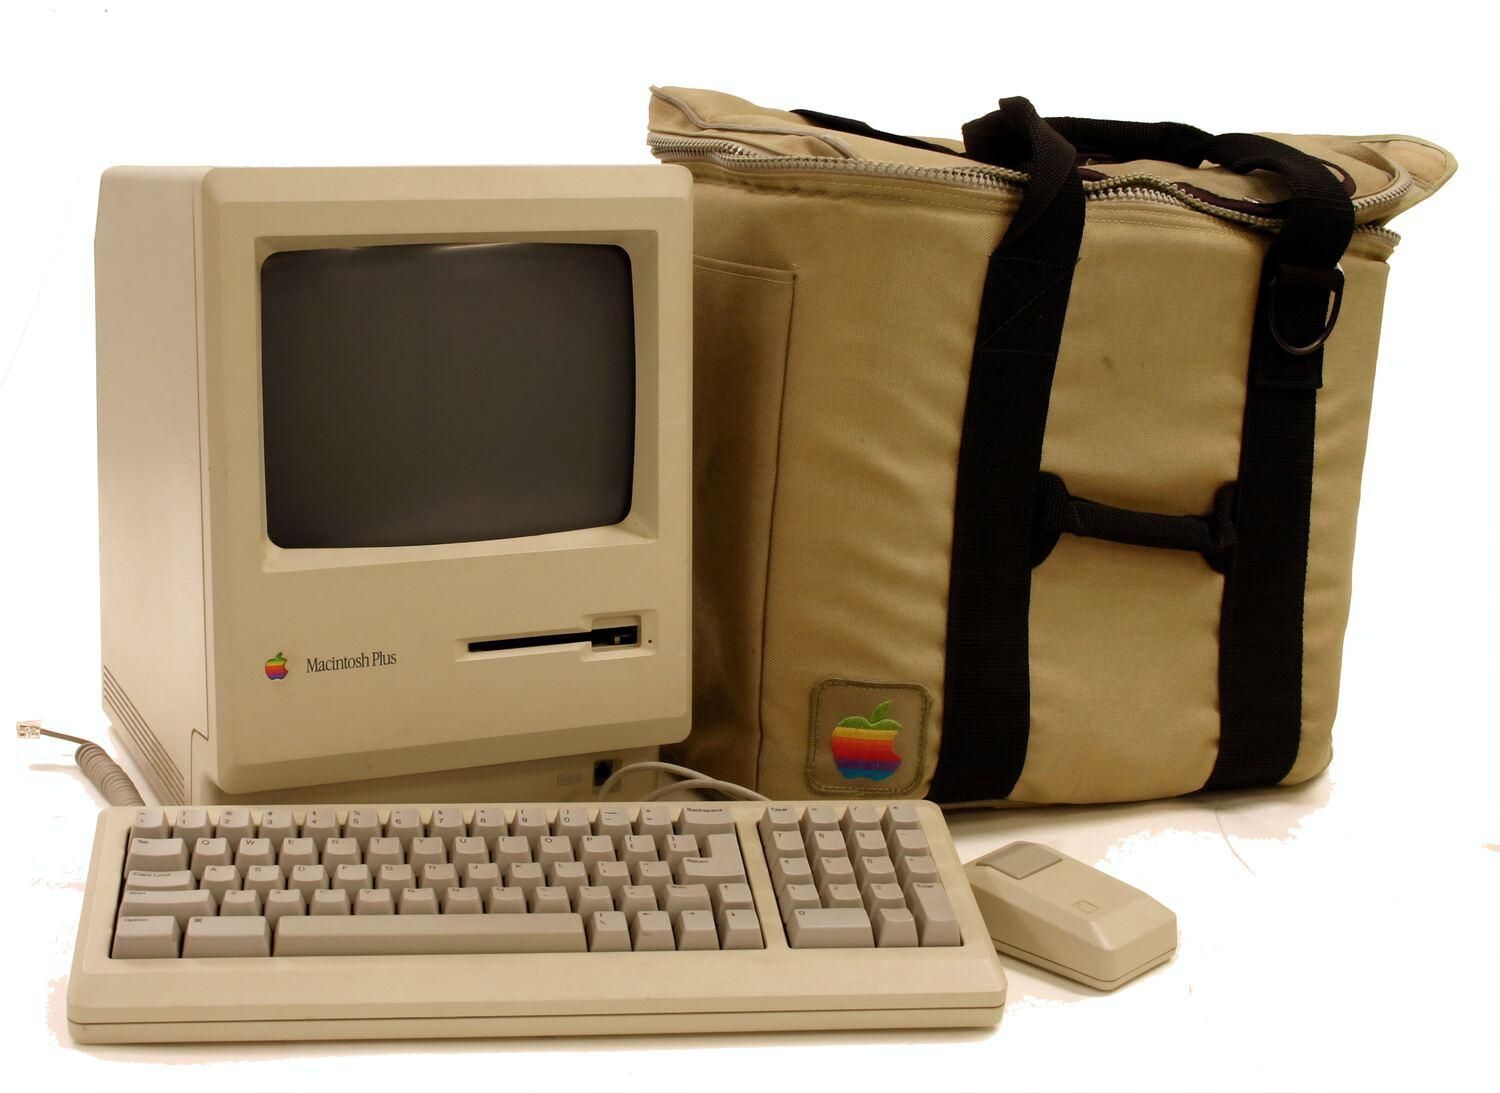 Дискету Apple Macintosh оценили в 7500 долларов